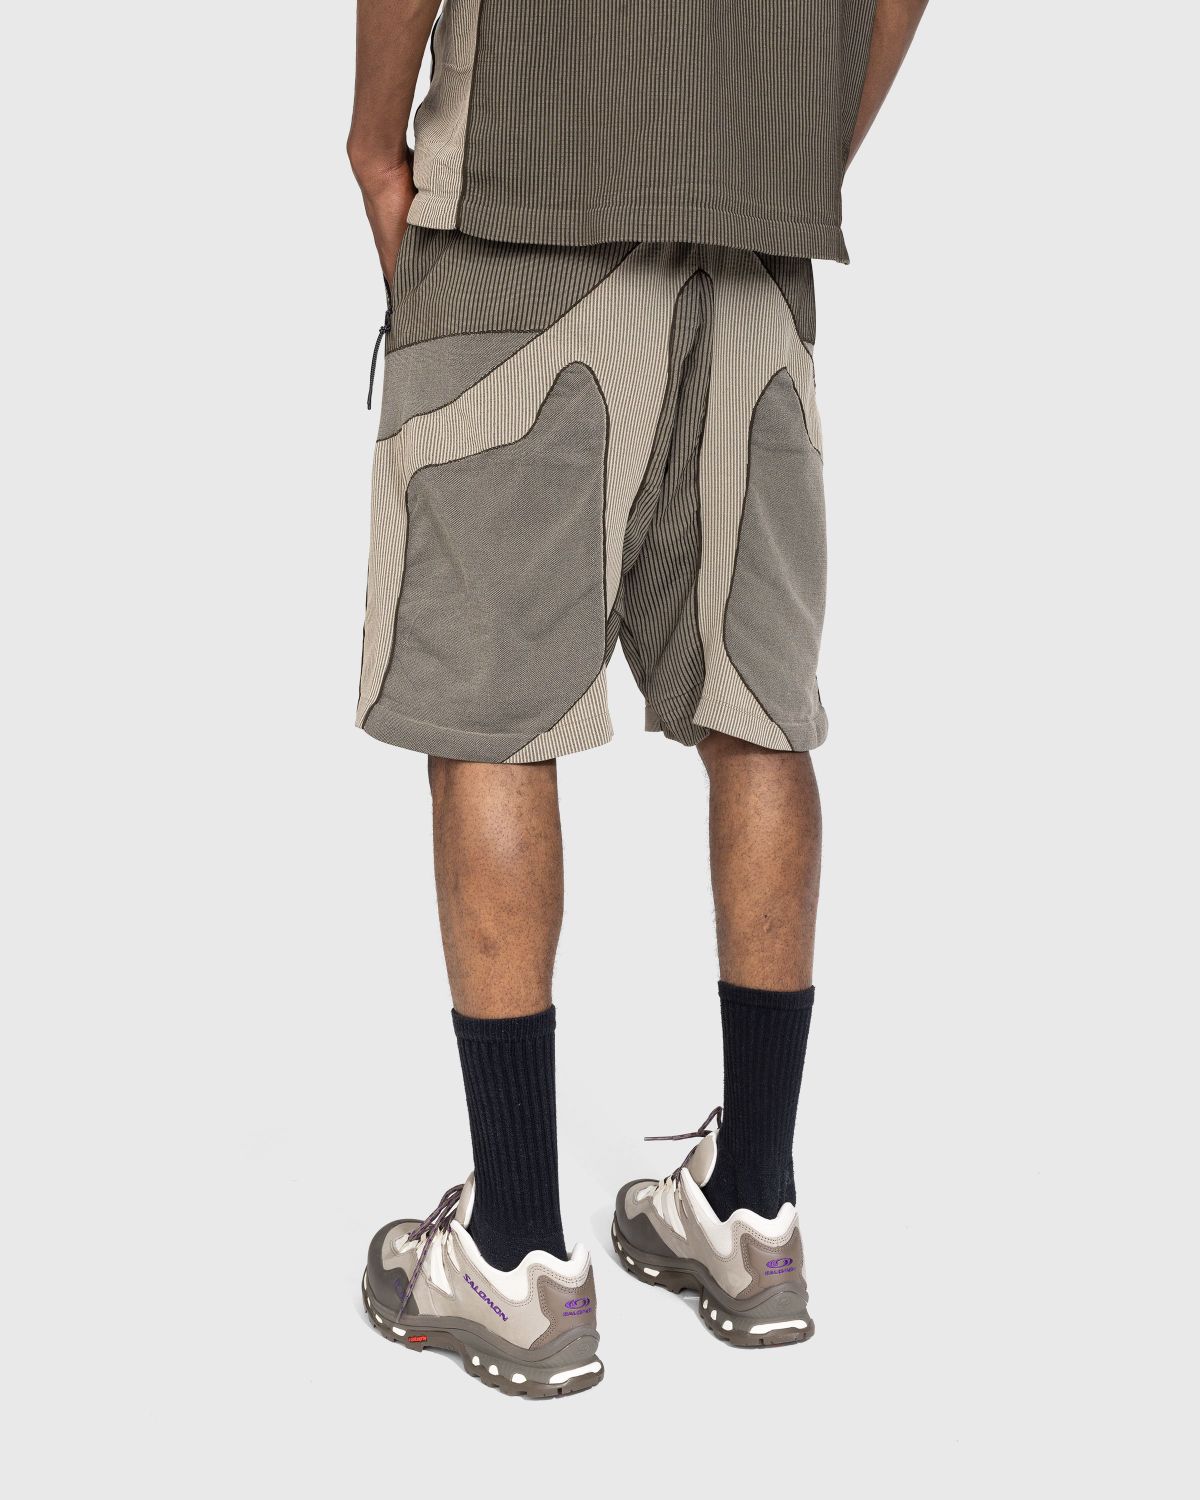 J.L-A.L – Gelder Knitted Short Brown/Sand - Shorts - Green - Image 3